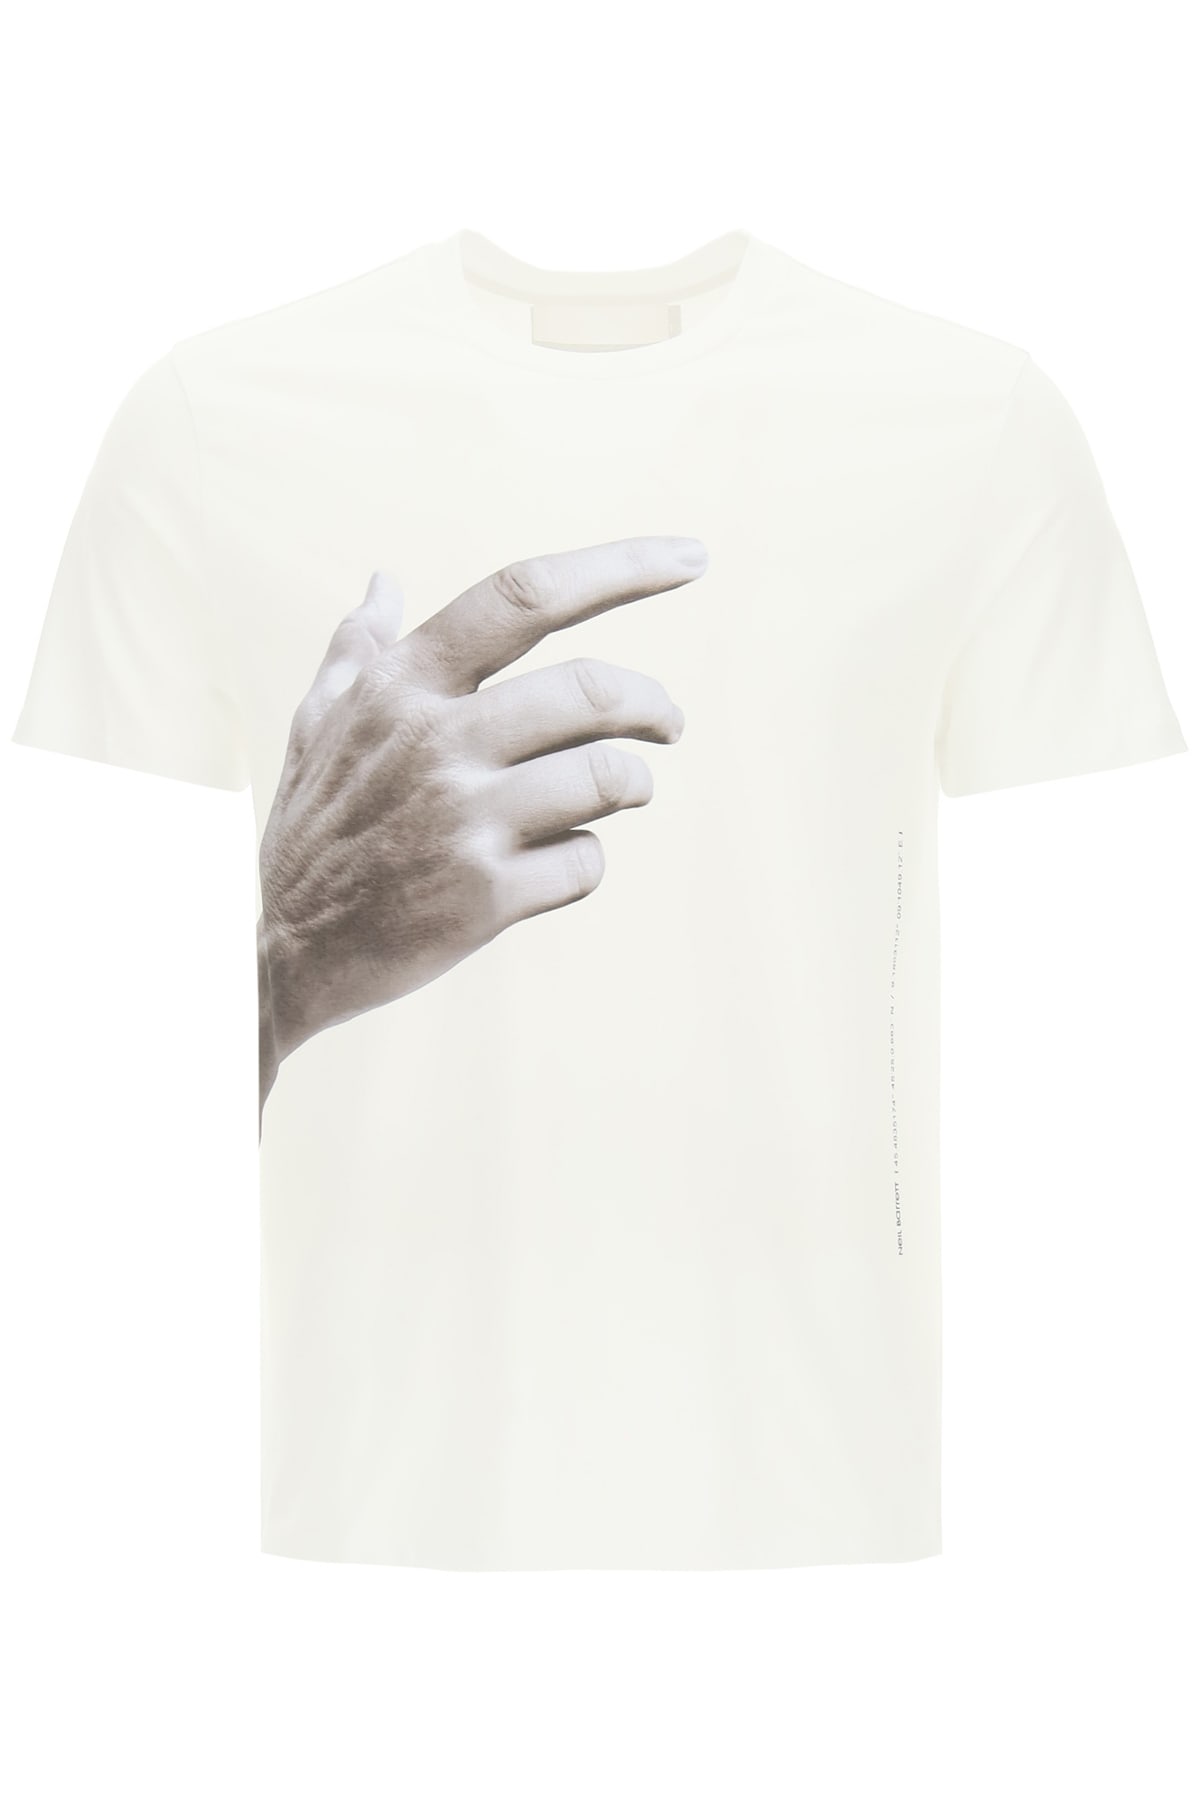 Neil Barrett The Other Hand T-shirt